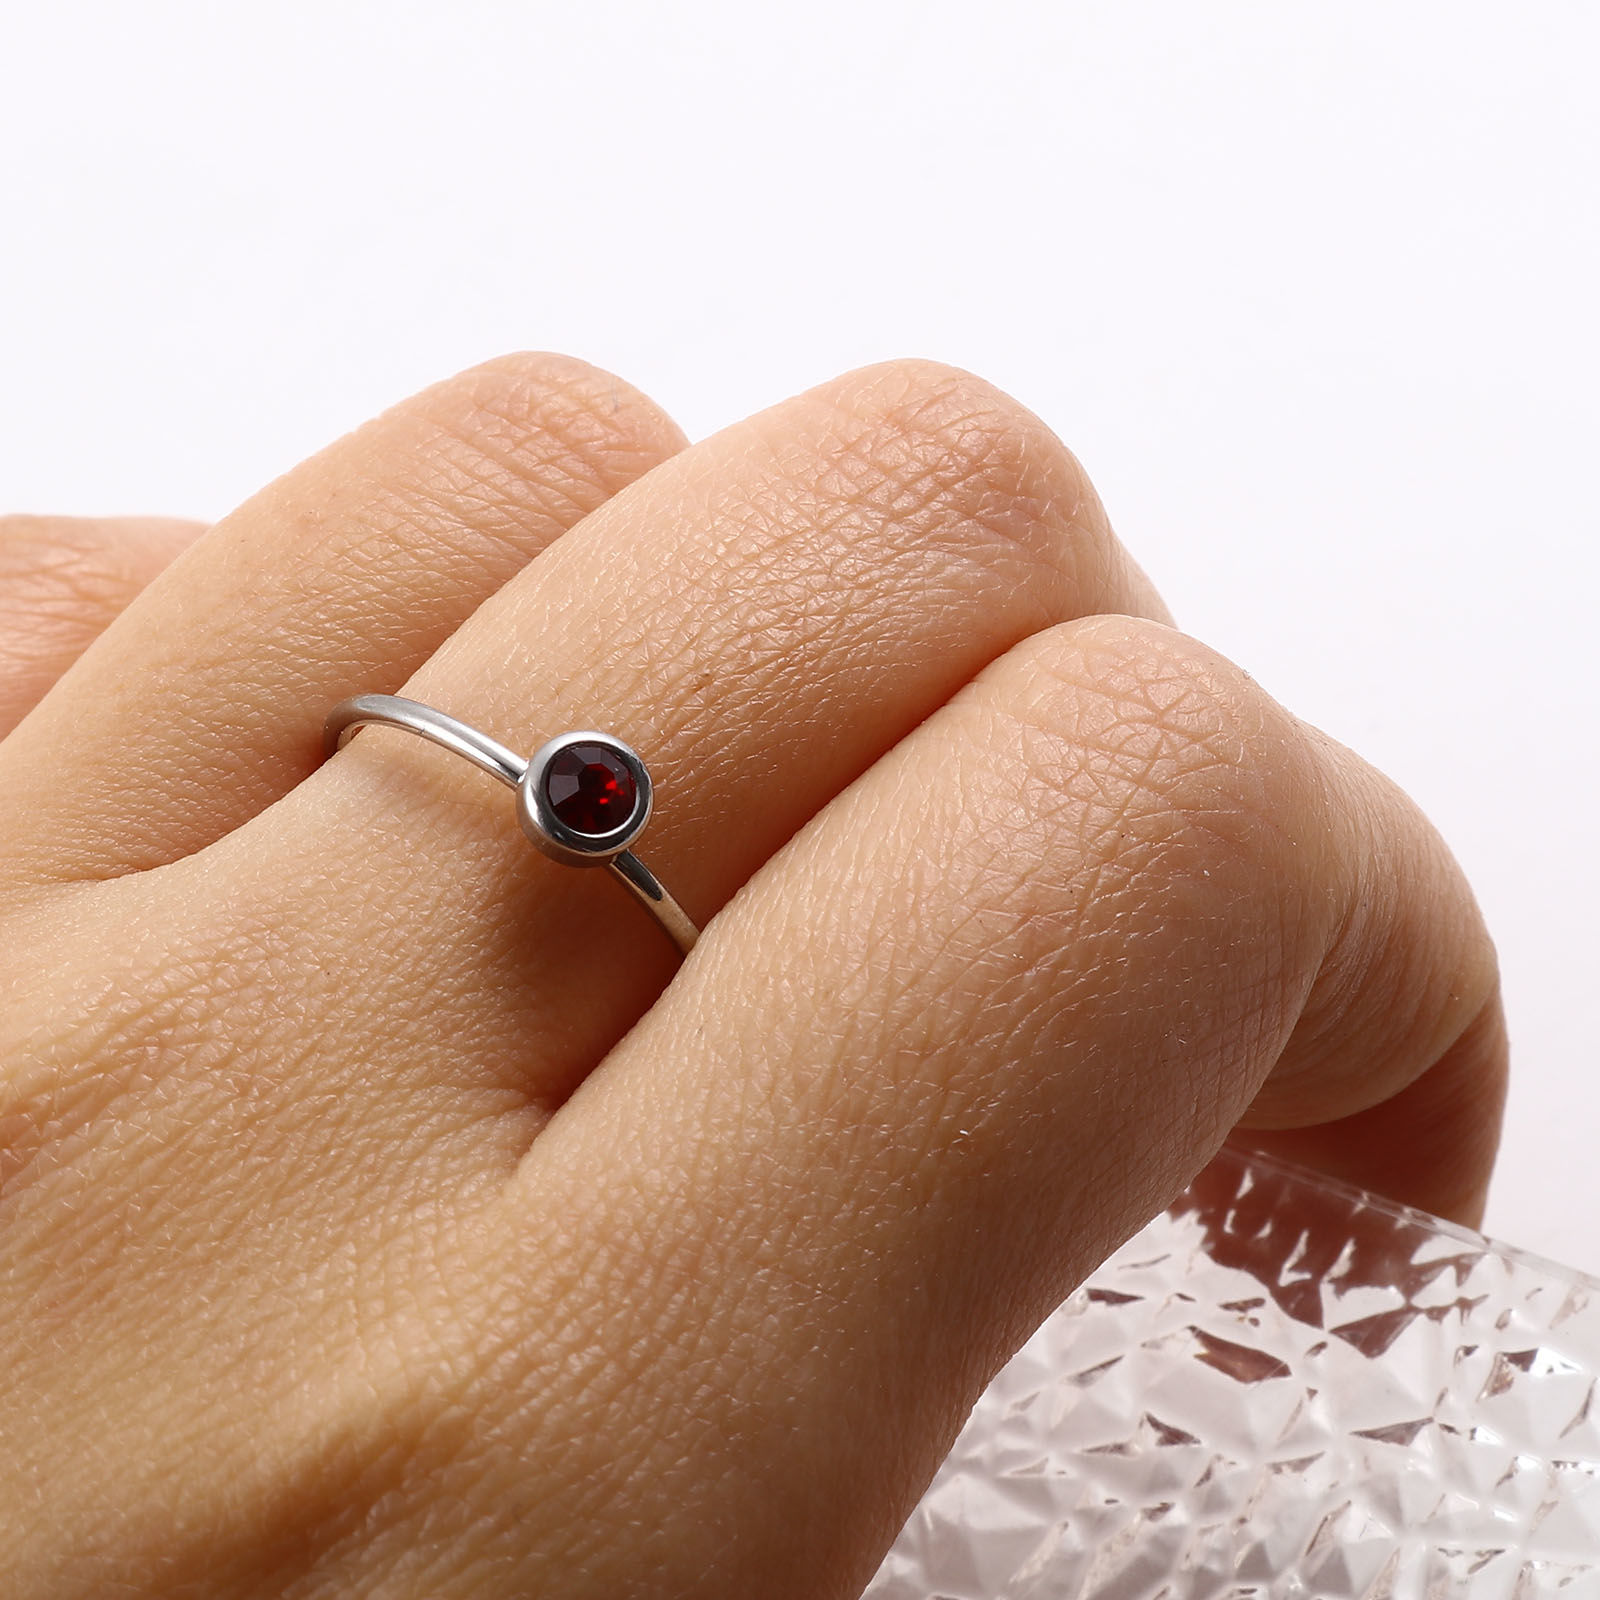 Bild von Edelstahl Monatsstein Uneinstellbar Ring Silberfarbe Ring Bunt Strass 16.5mm（US Größe:6), 1 Stück